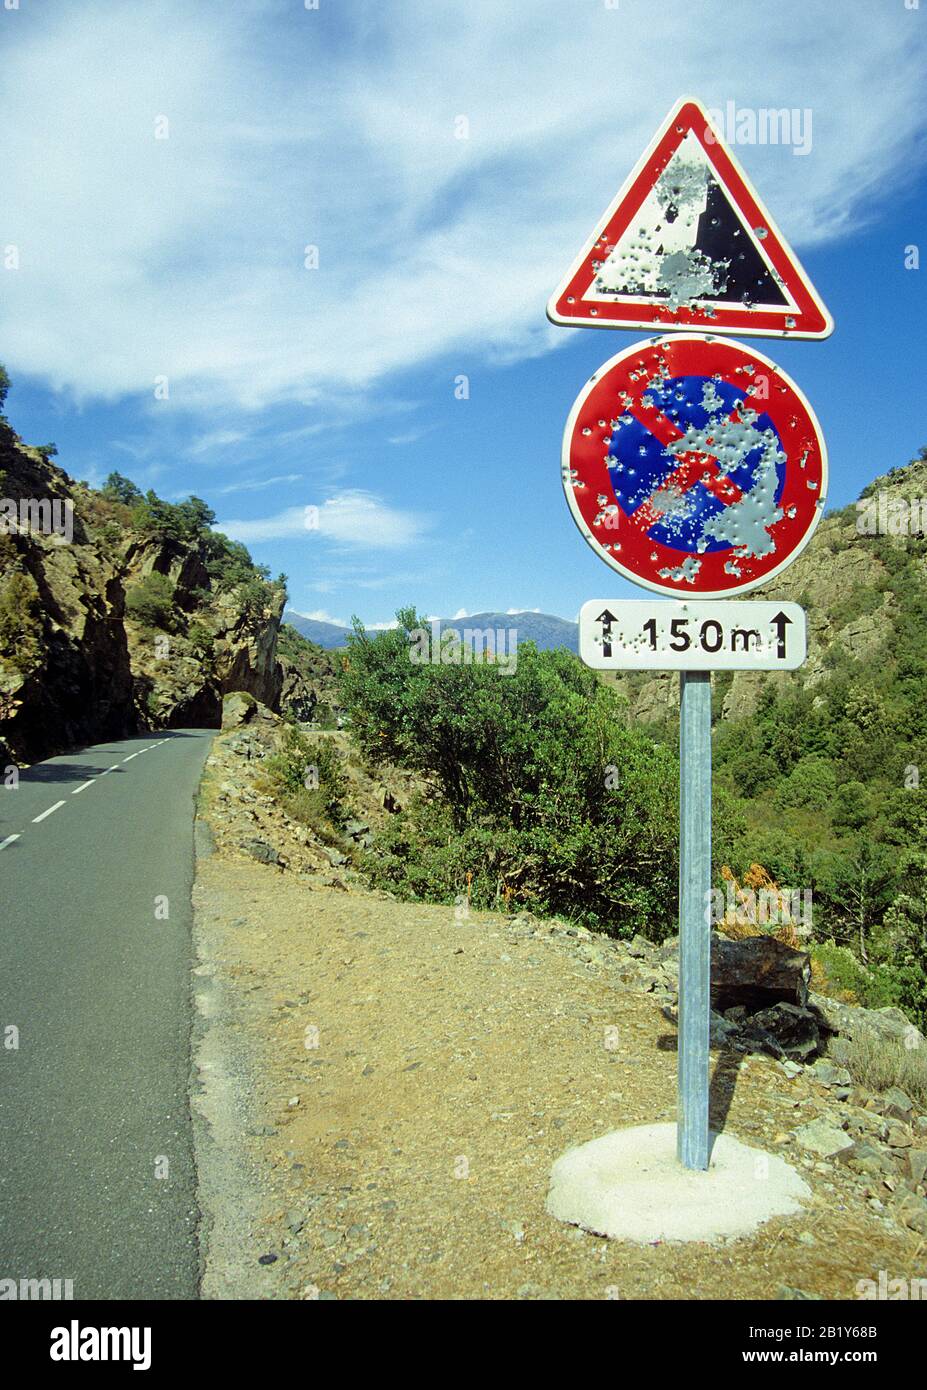 Spara attraverso la segnaletica stradale, vandalismo, simbolo della libertà, seperatism, Corsica, Francia Foto Stock